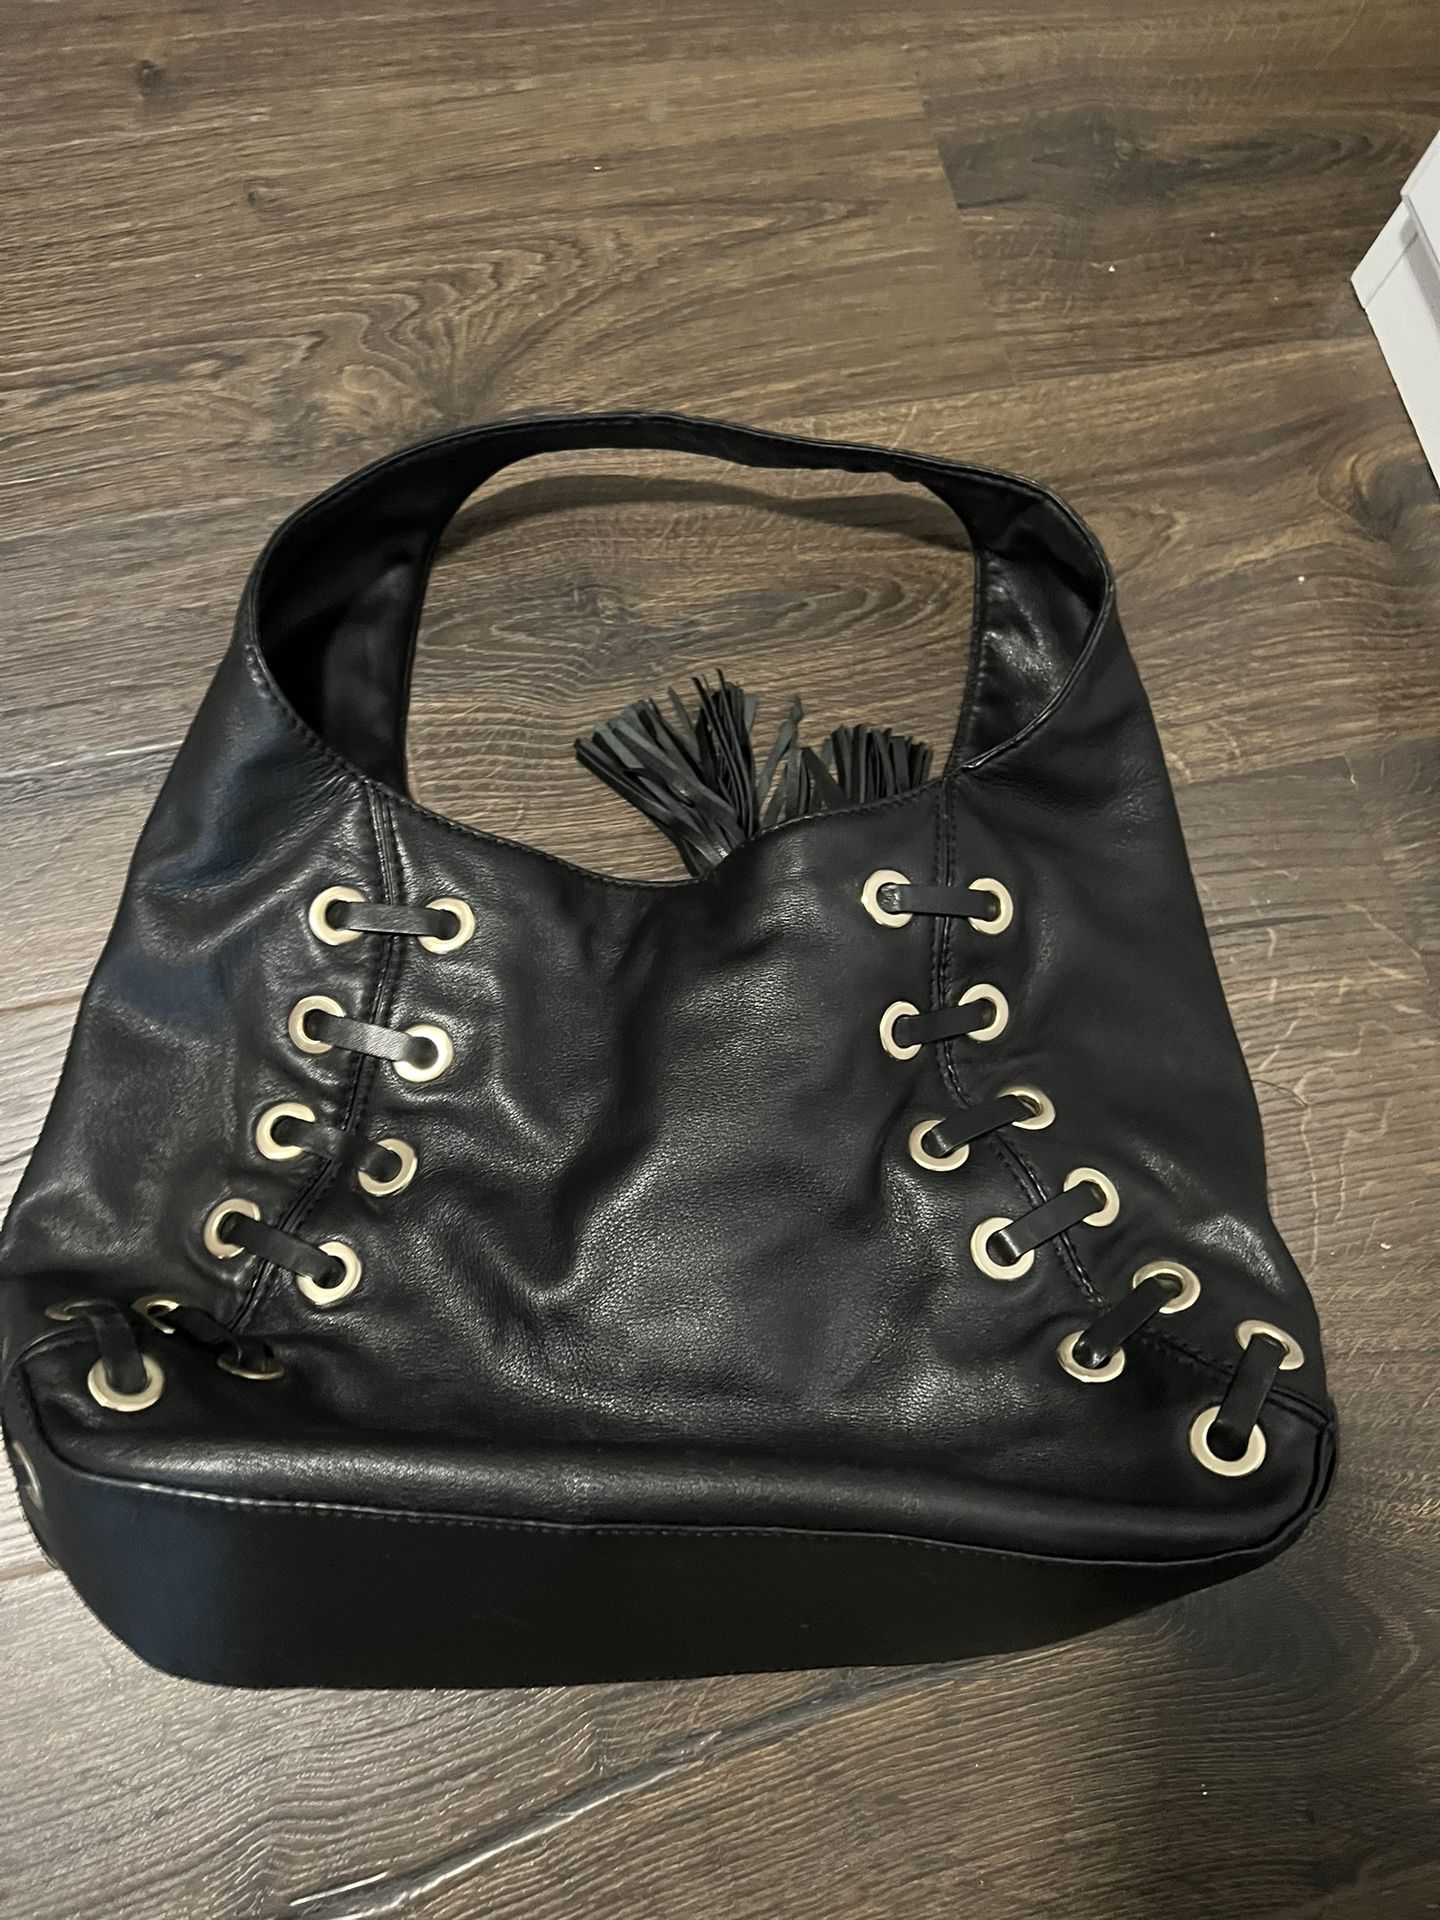 Michael Kors Leather Hobo Grommet Bag